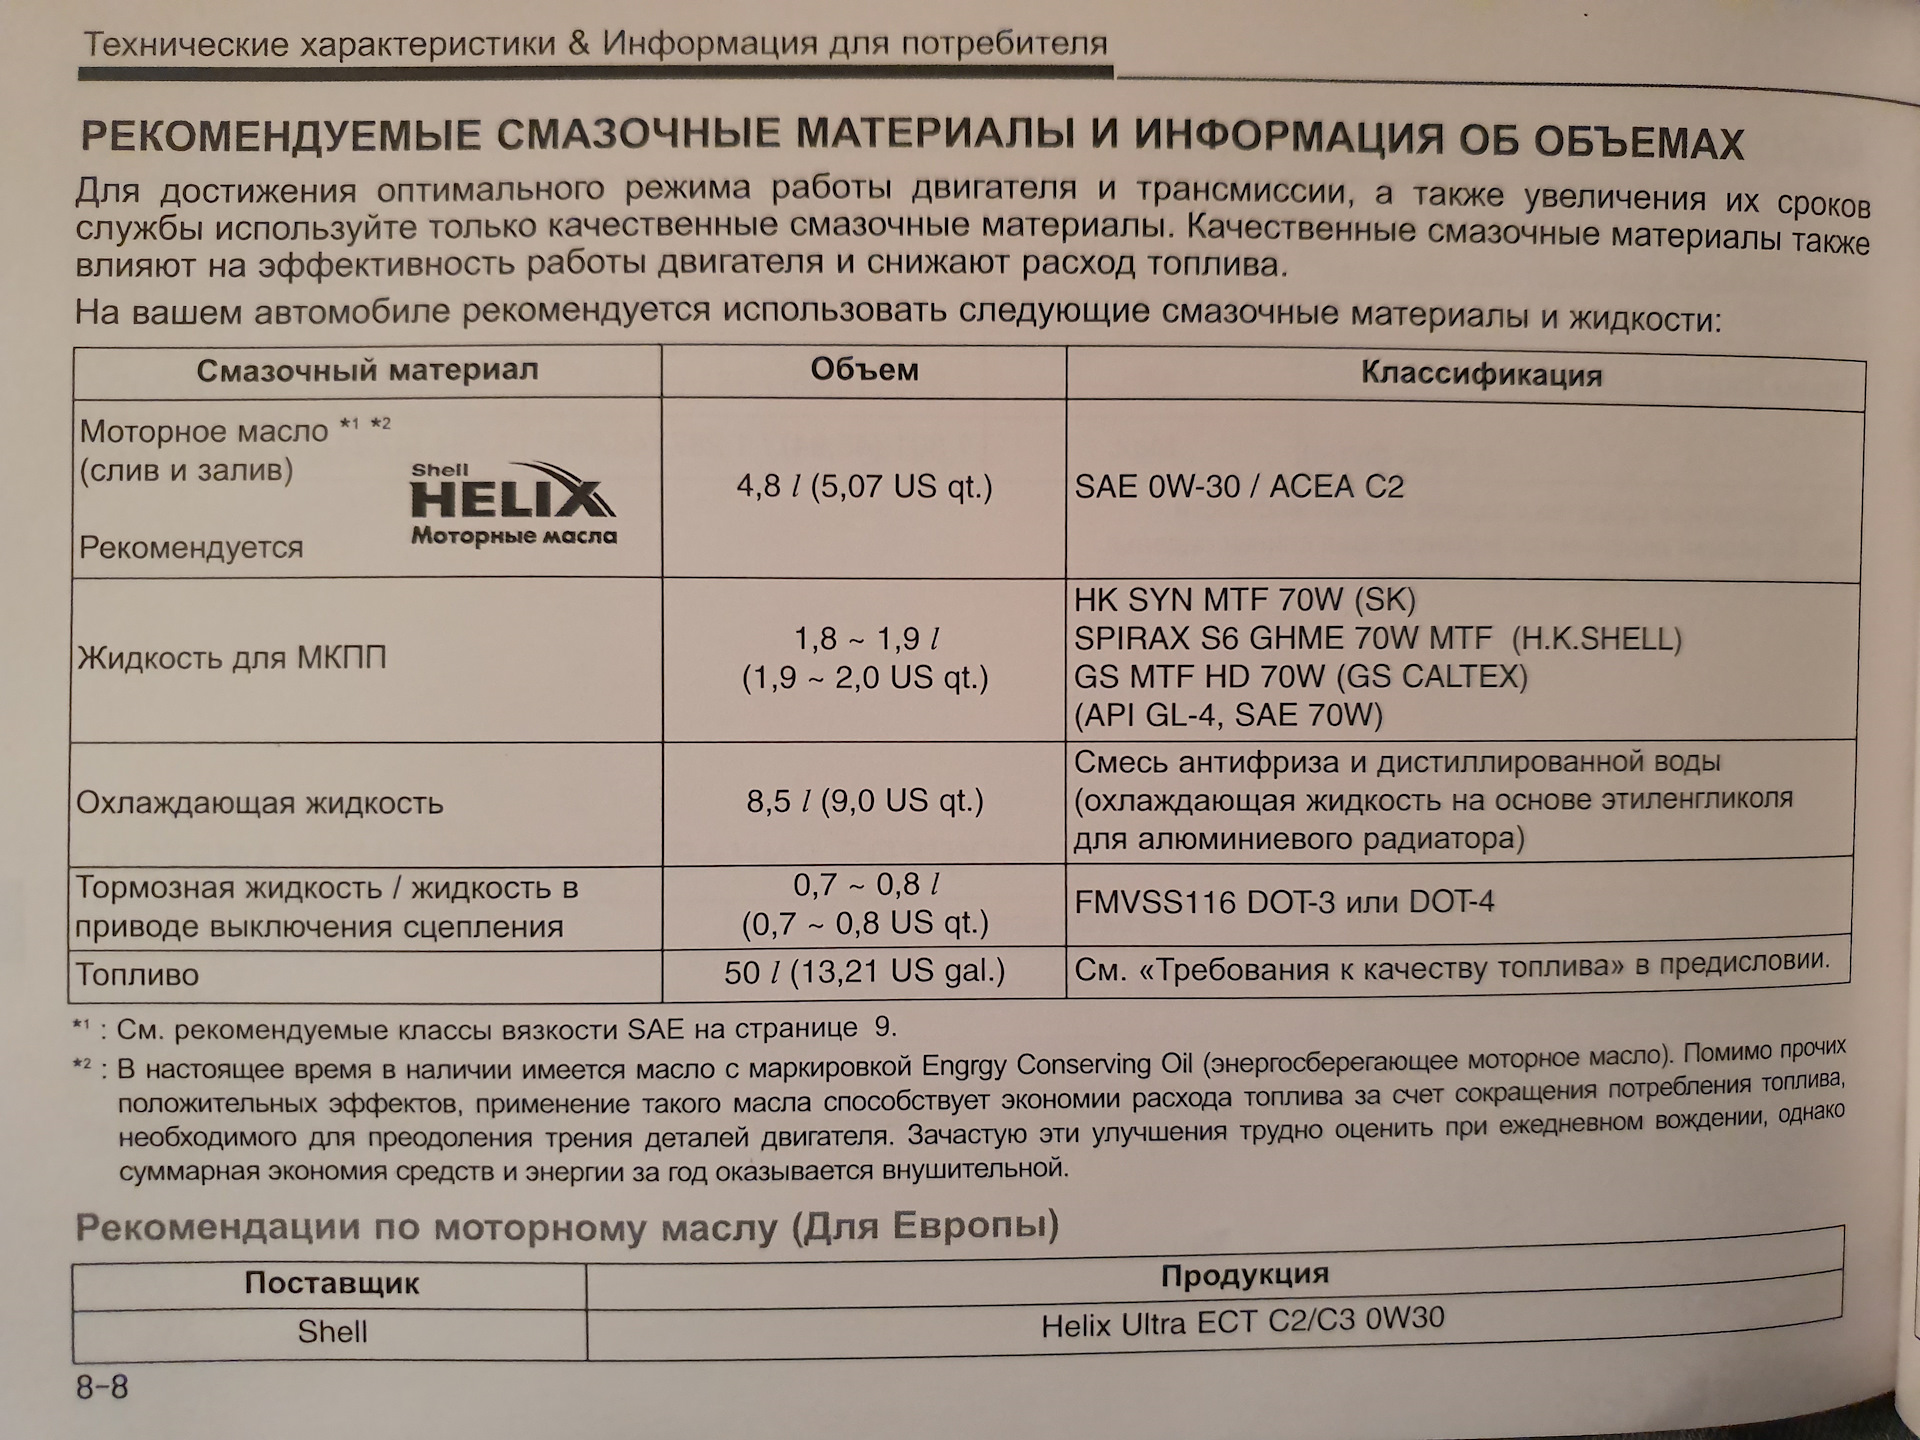 Объем масла солярис 1. Допуски масла для Хендай Солярис 1.6. Solaris Hyundai 2015 допуски масла 1,6. Допуски моторного масла Хендай i30 1,6. Solaris 1.6 масло в двигатель допуски.